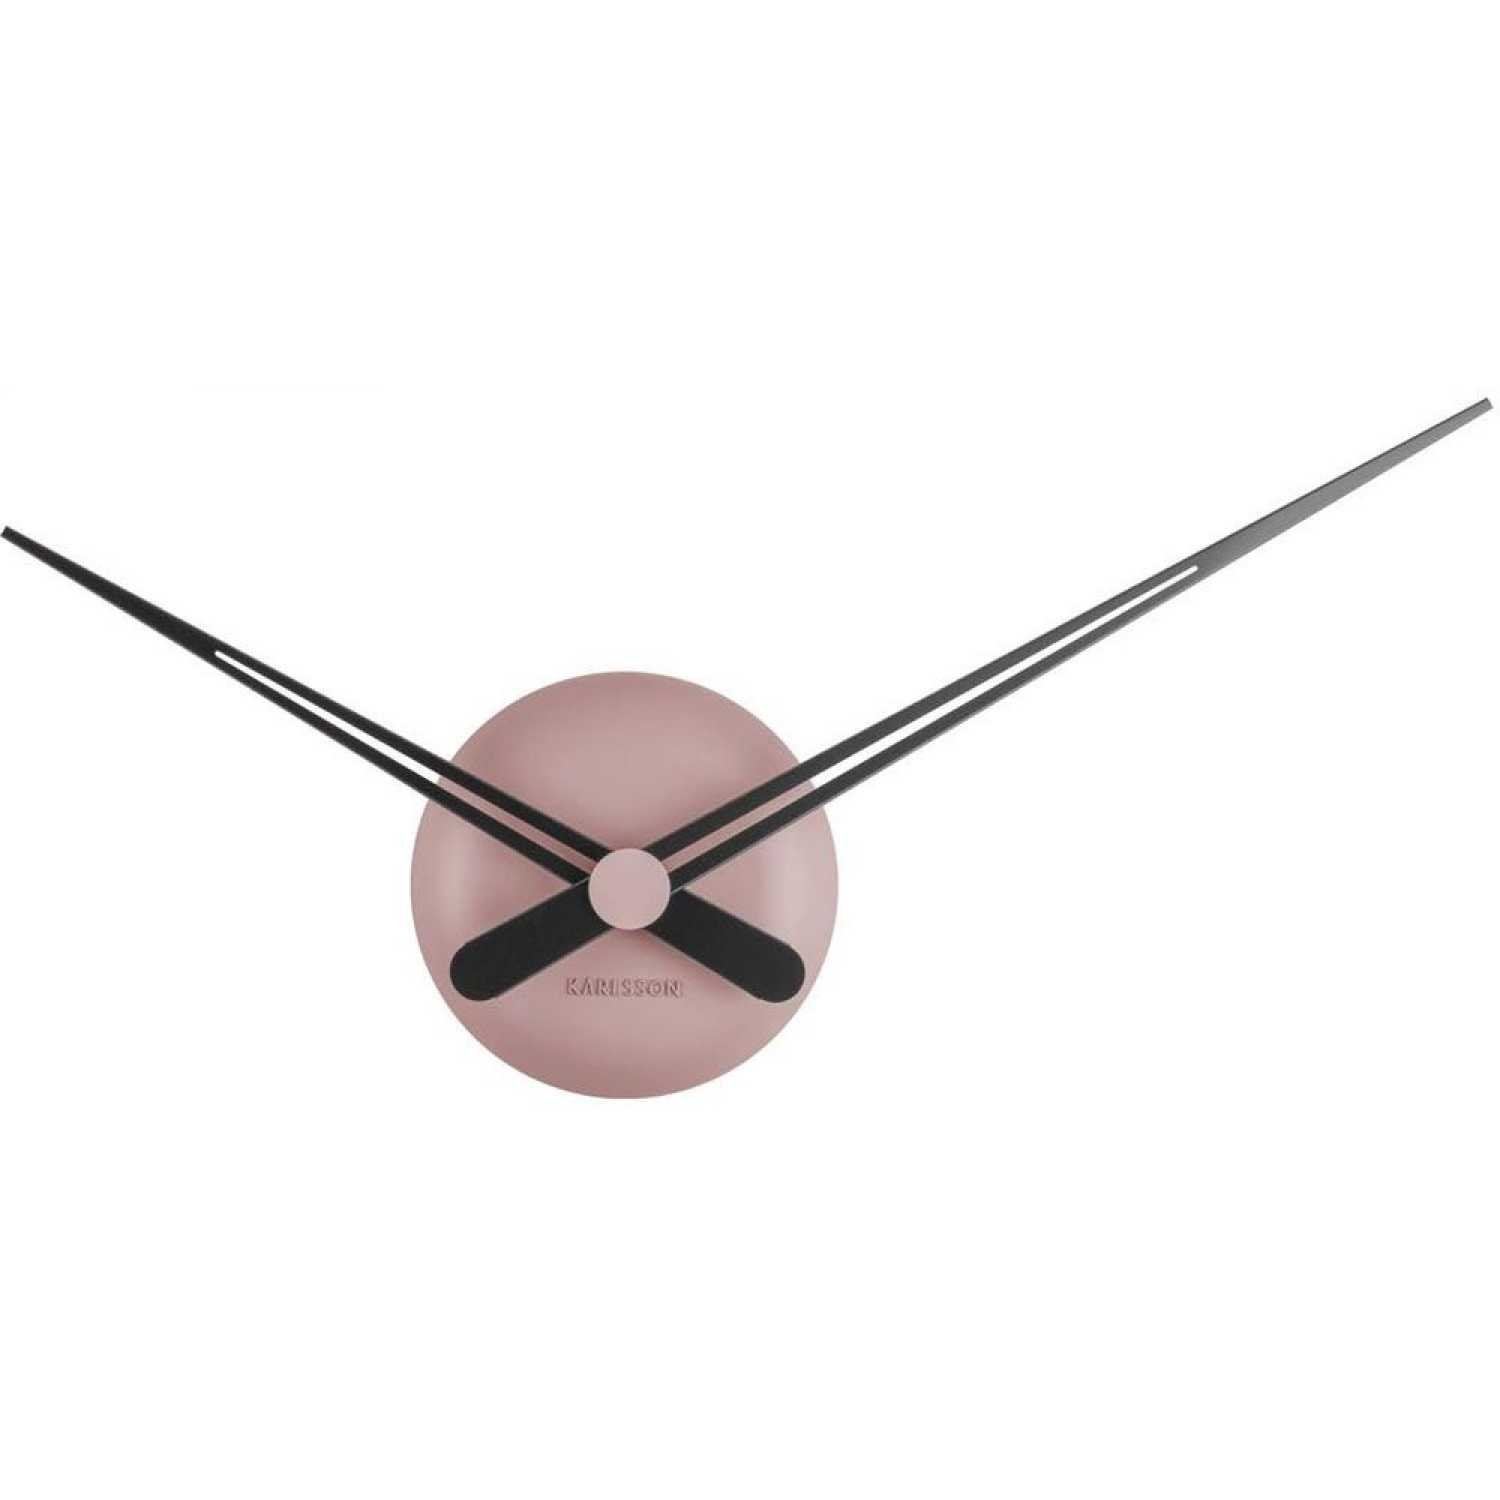 Karlsson Lbt Wall Clock - Faded Pink